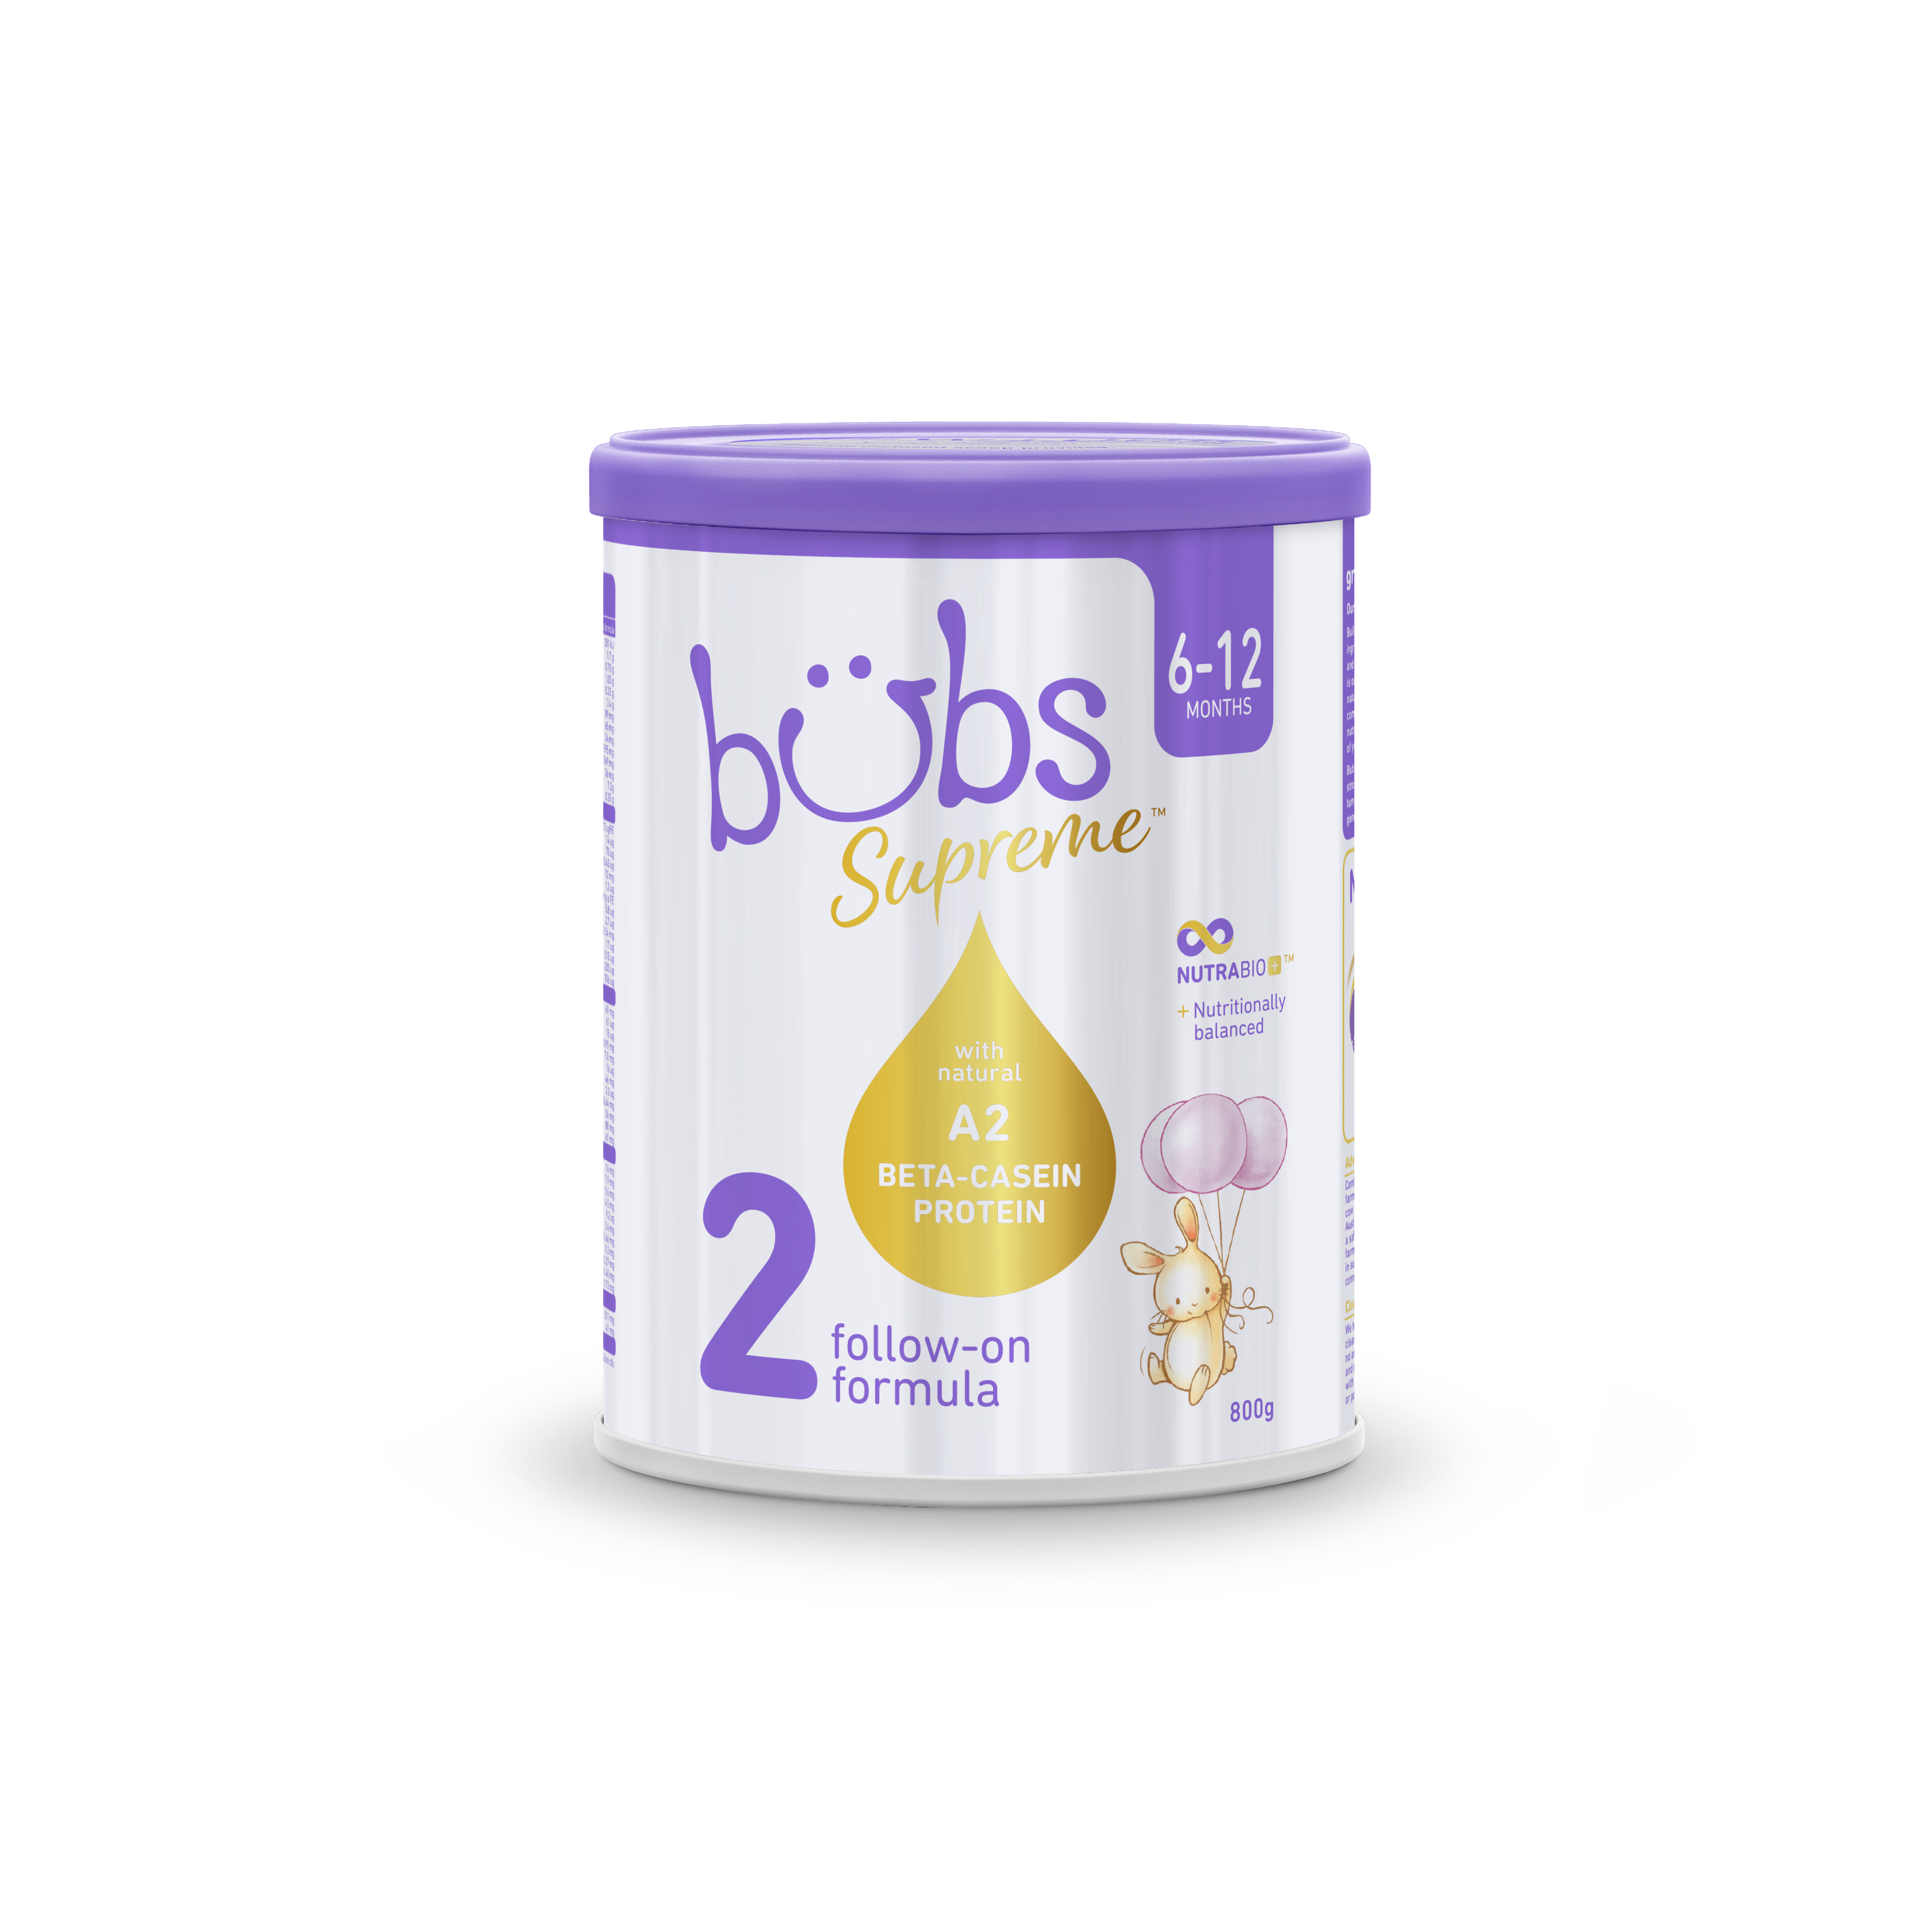 [Date 10.24] Sản phẩm dinh dưỡng công thức dành cho trẻ từ 6-12 tháng tuổi: Bubs Supreme Follow-On Formula 2